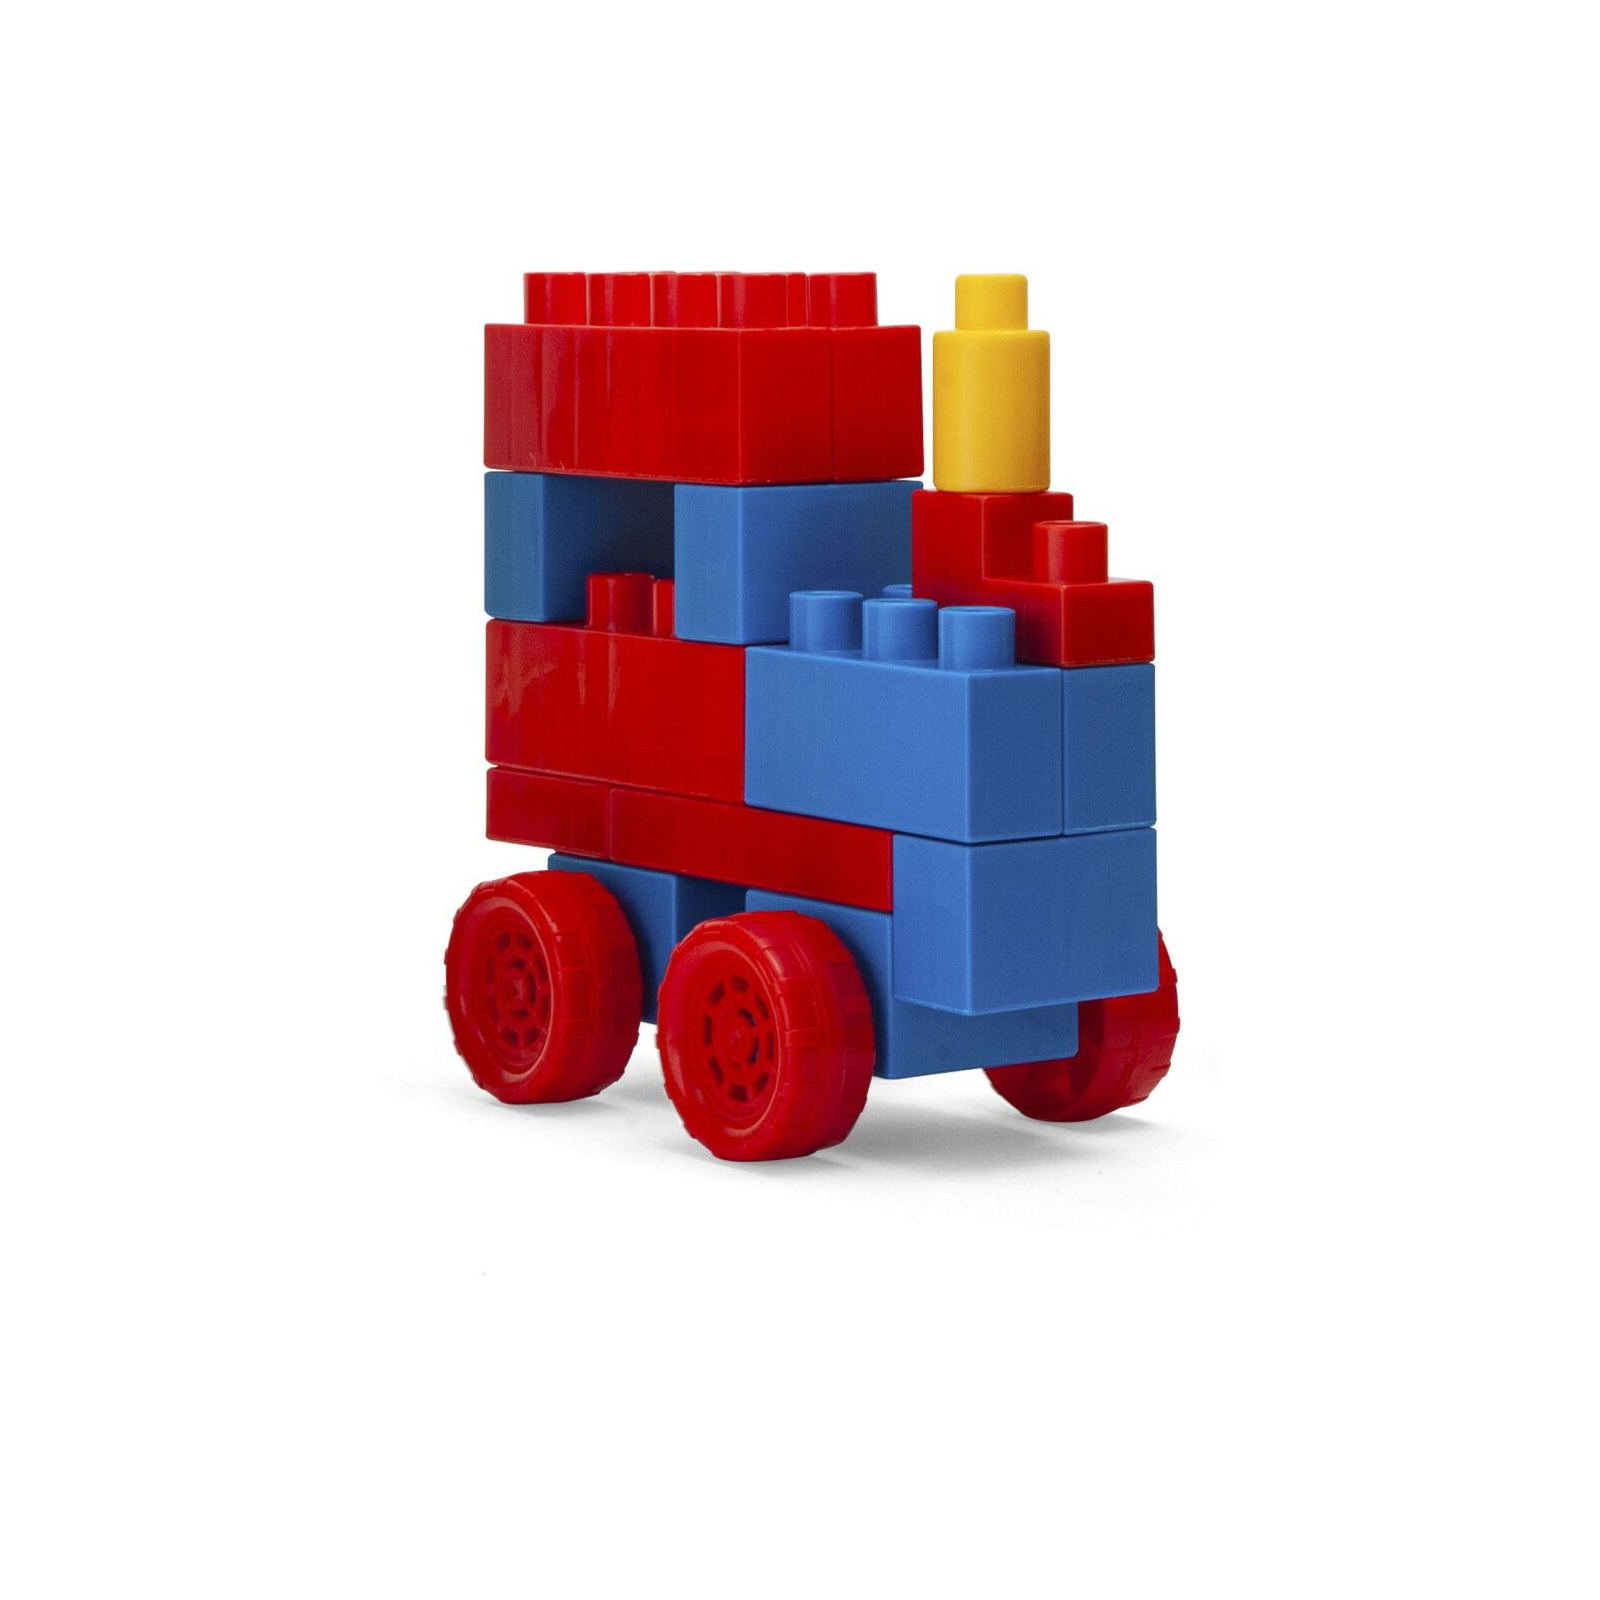 Конструктор Wader Kids Blocks 70 элементов в банке (41295) изображение 3